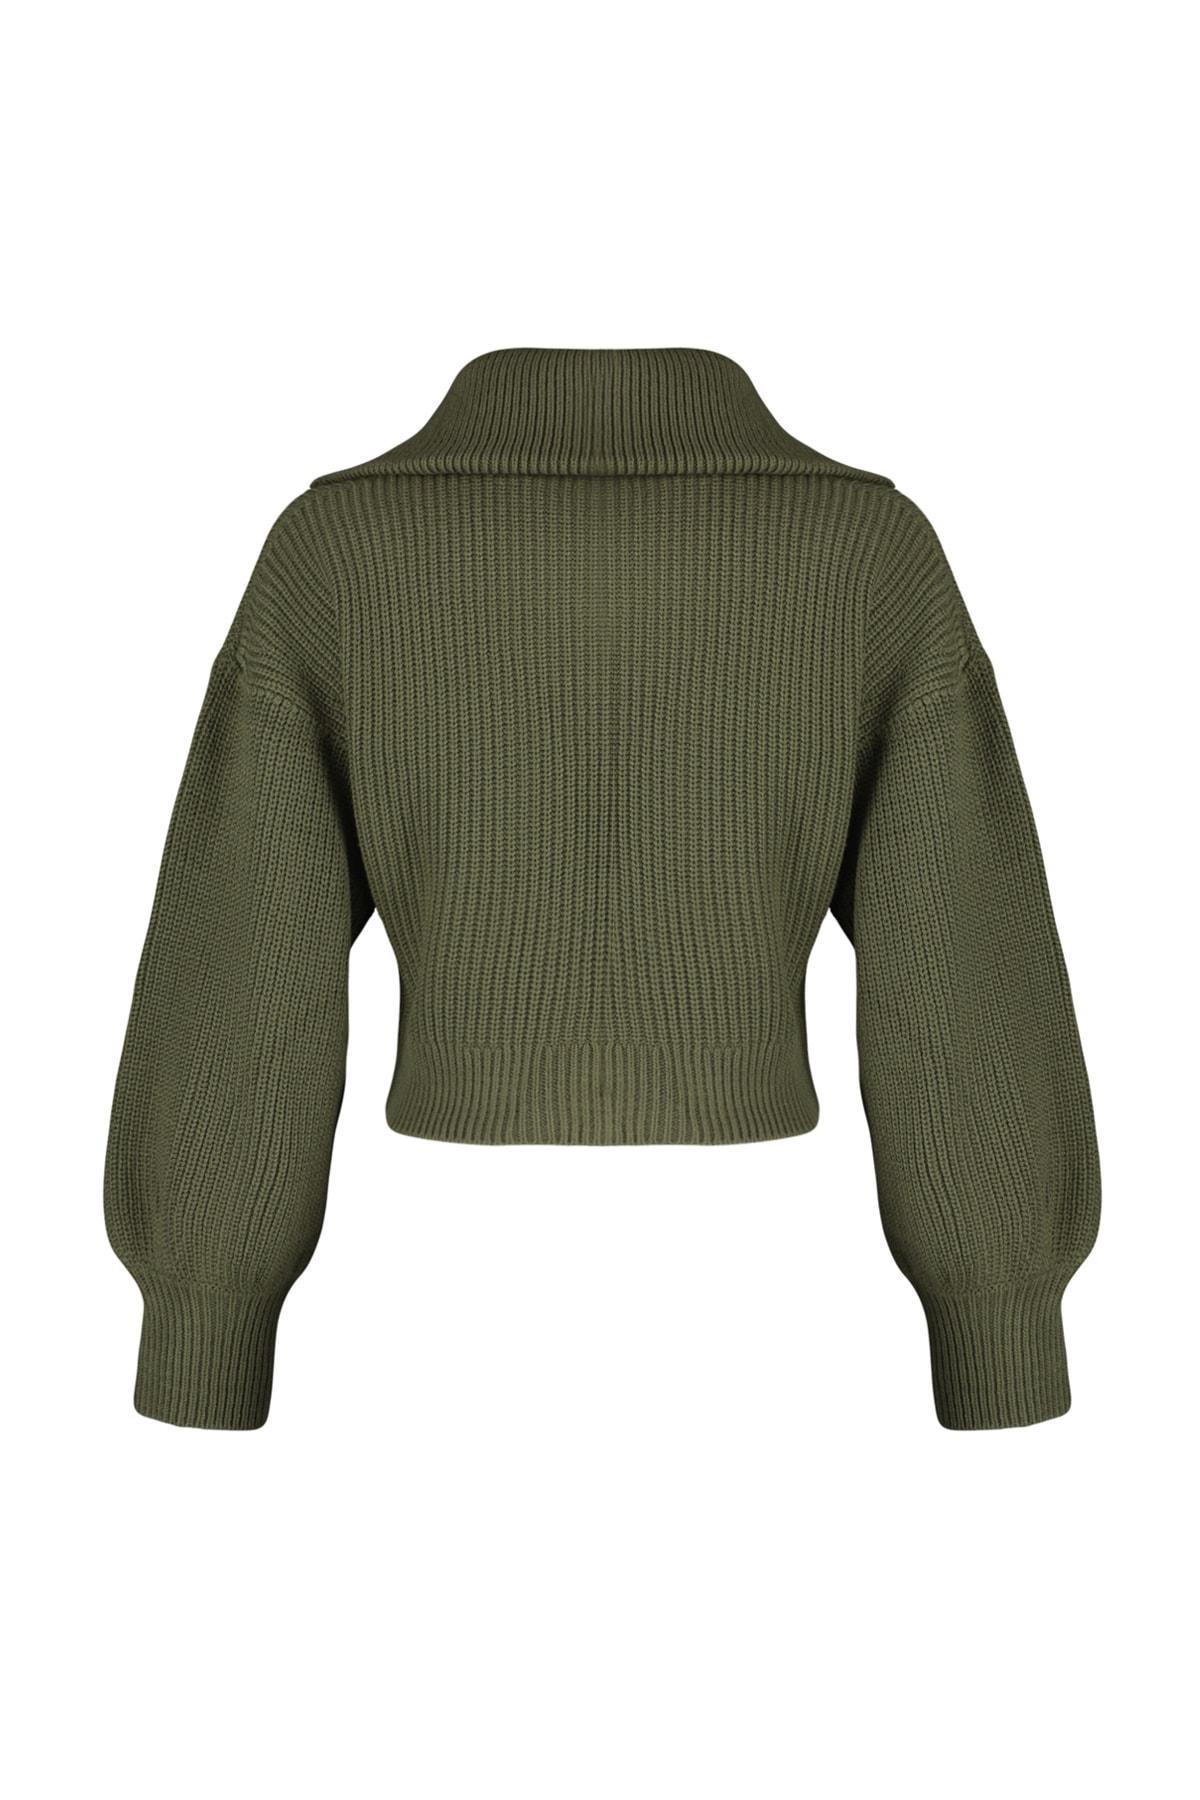 Trendyol - Khaki Crop Zippered Knitwear Cardigan TWOAW23HI00373, Single